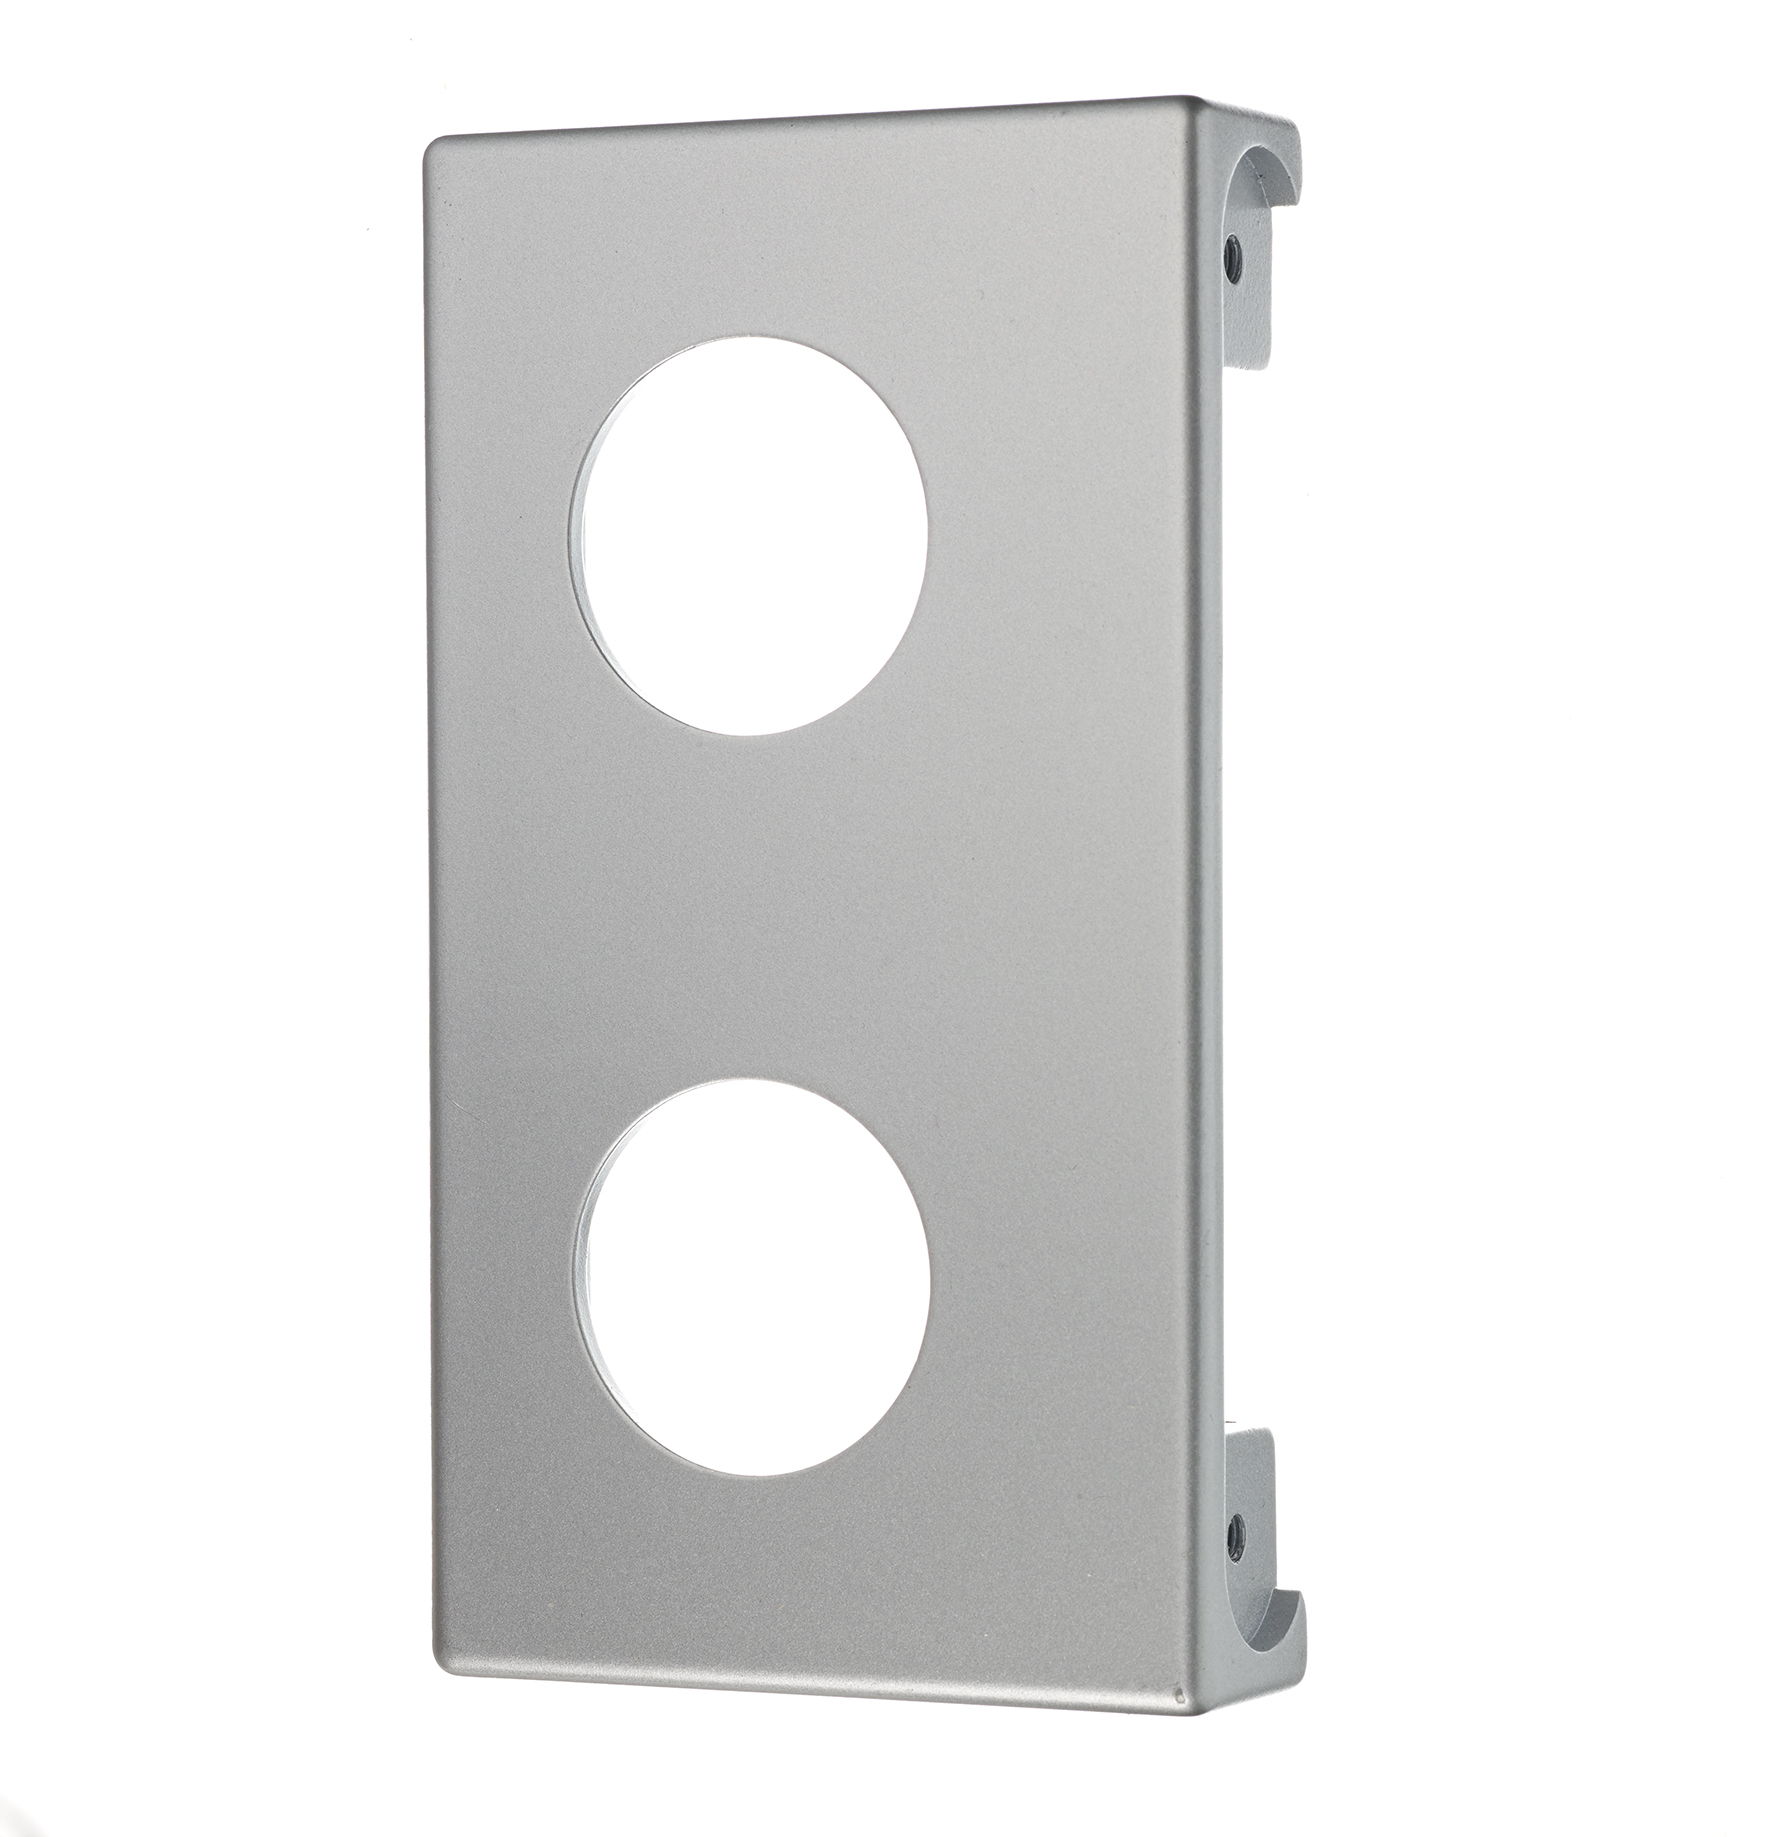 RG-441 låskassett för dörrar